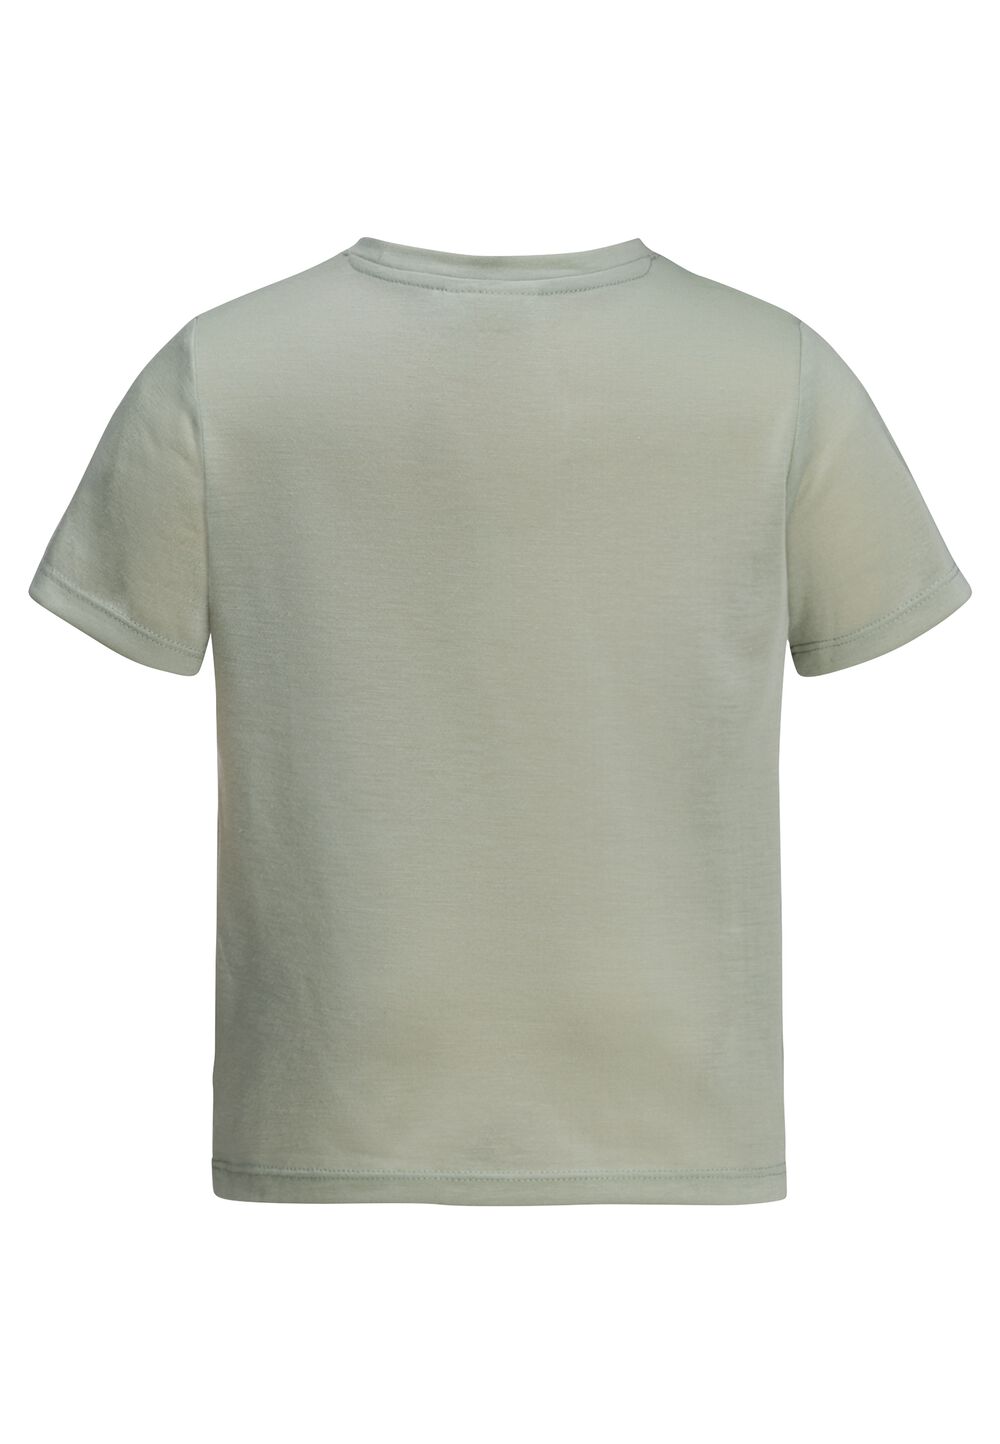 Jack Wolfskin Smileyworld Camp T-Shirt Kids Functioneel shirt Kinderen 128 mint leaf mint leaf